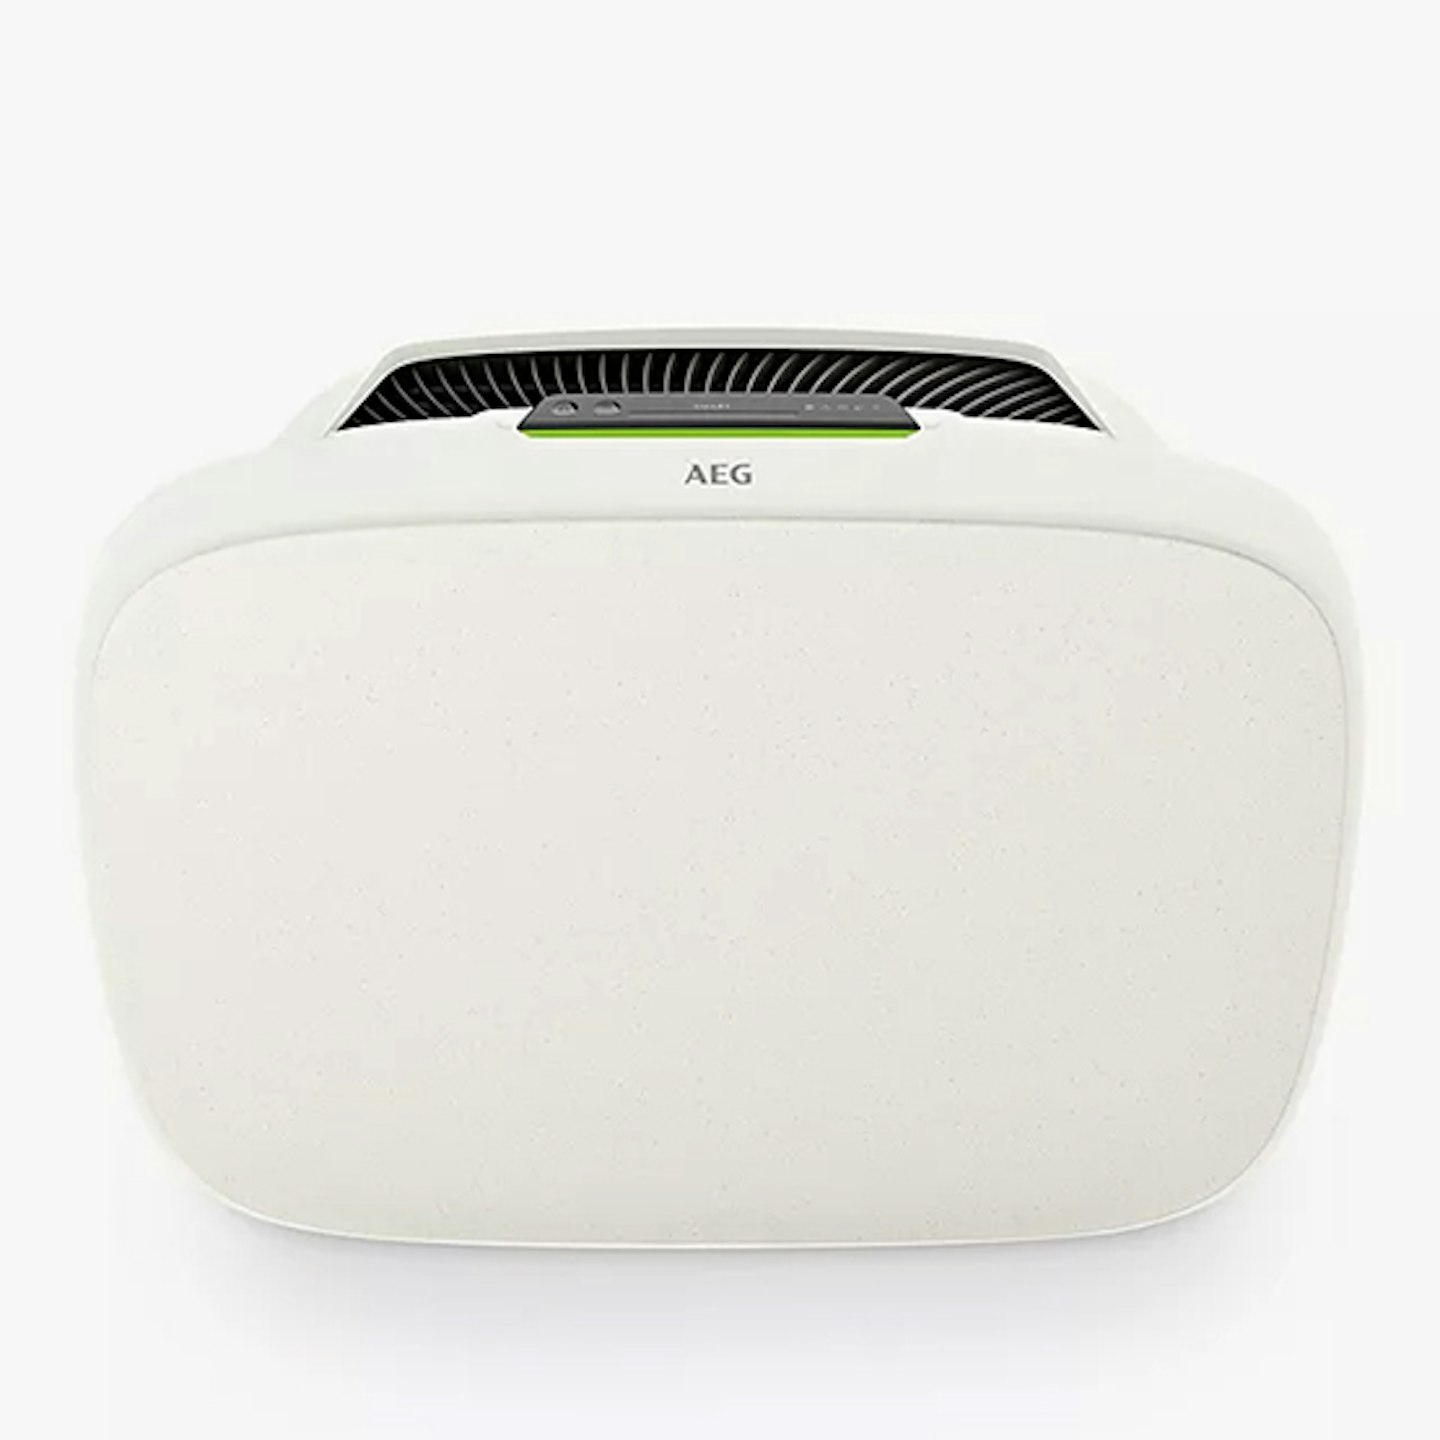 AEG AX51-304WT Air Purifier